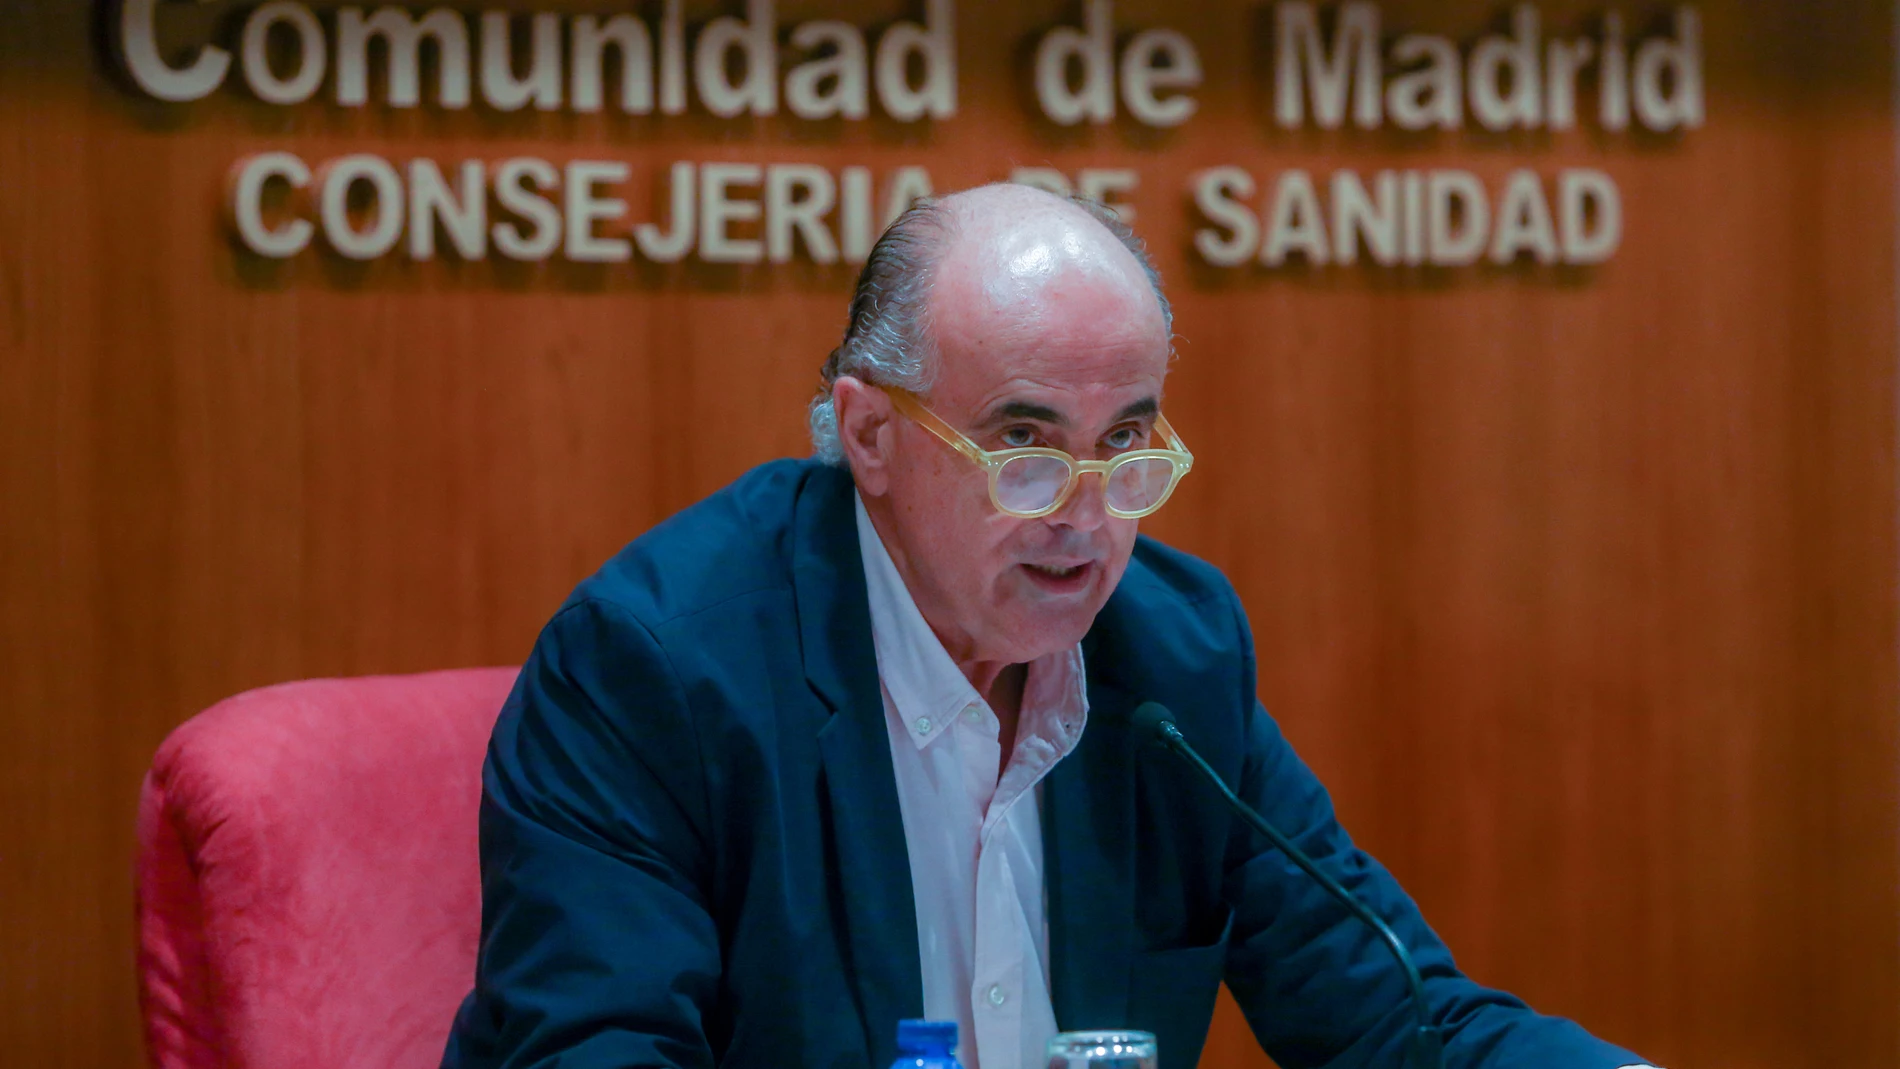 El viceconsejero de Salud Pública y Plan COVID-19 de la Comunidad de Madrid, Antonio Zapatero, interviene durante una rueda de prensa en la Consejería de Sanidad, en Madrid